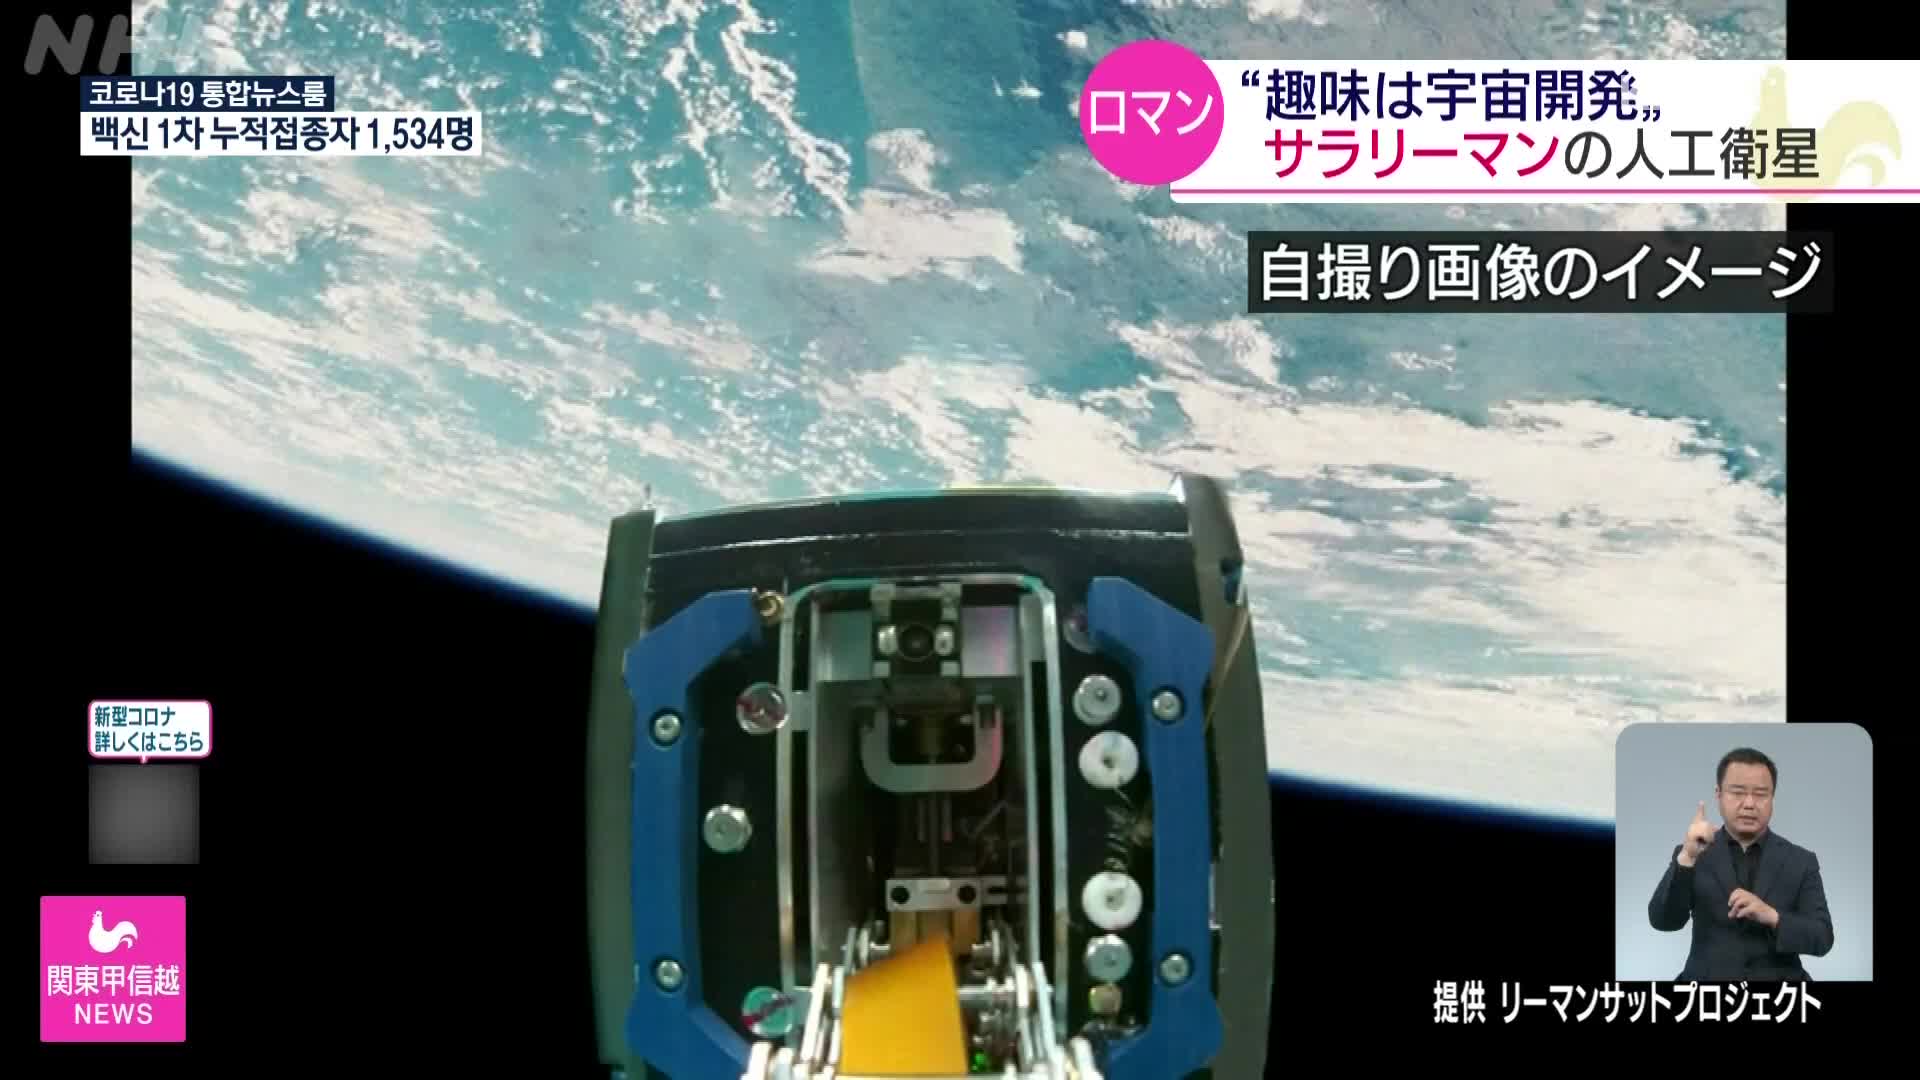 우주개발이 취미인 일본 직장인들